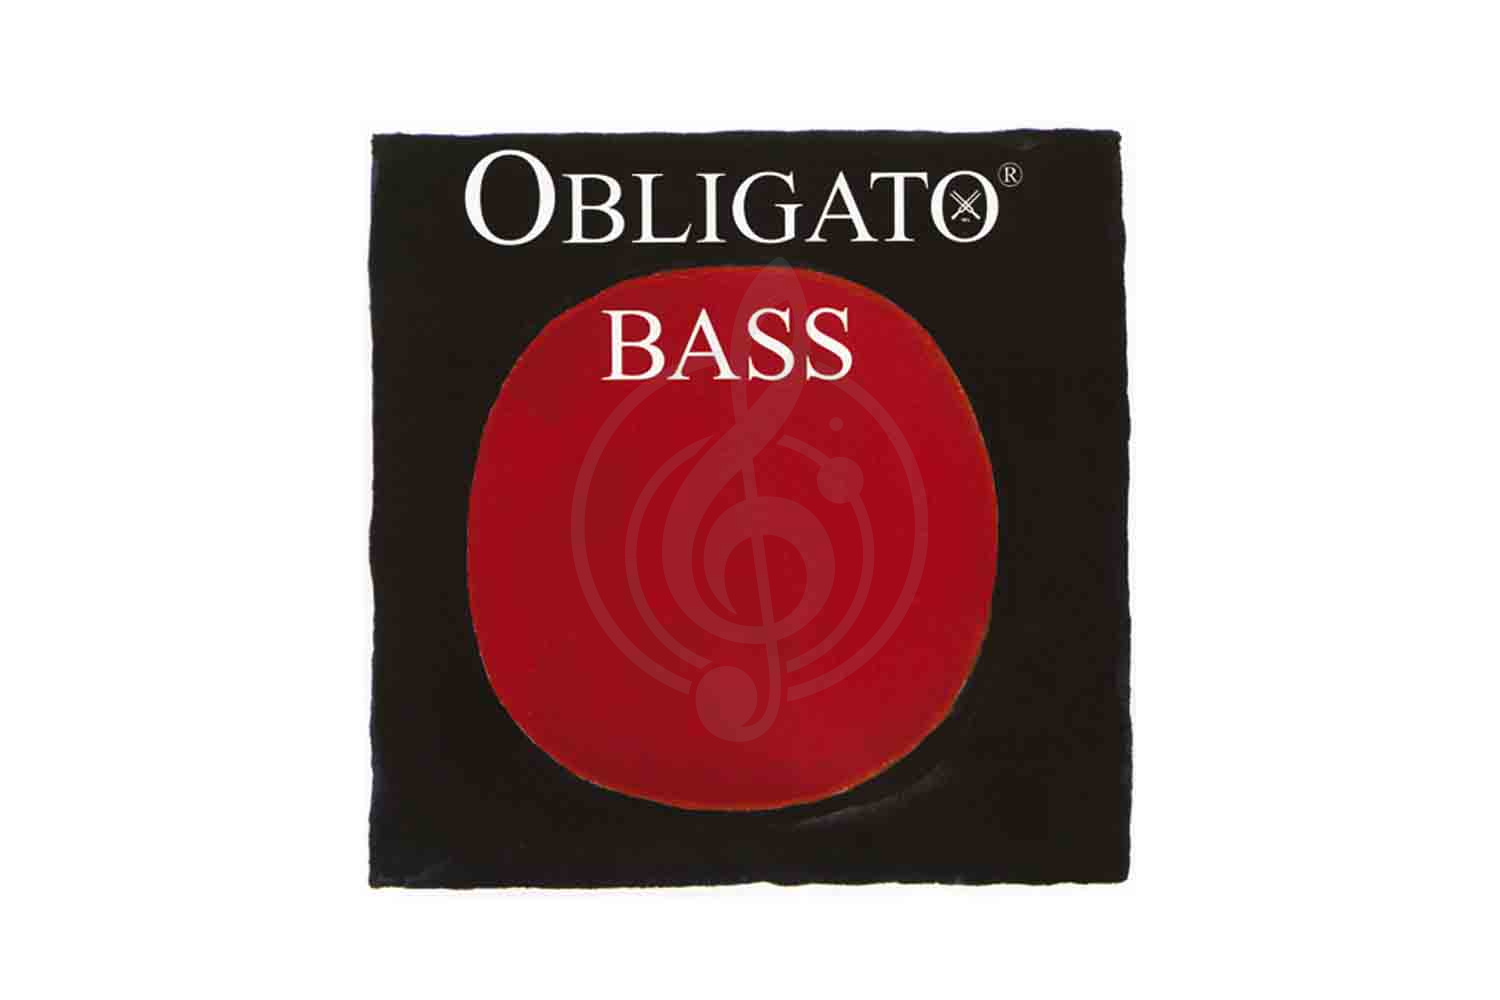 Струны для контрабаса Pirastro 441020 Obligato Orchestra - Комплект струн для контрабаса размером 3/4, Pirastro 441020 в магазине DominantaMusic - фото 1